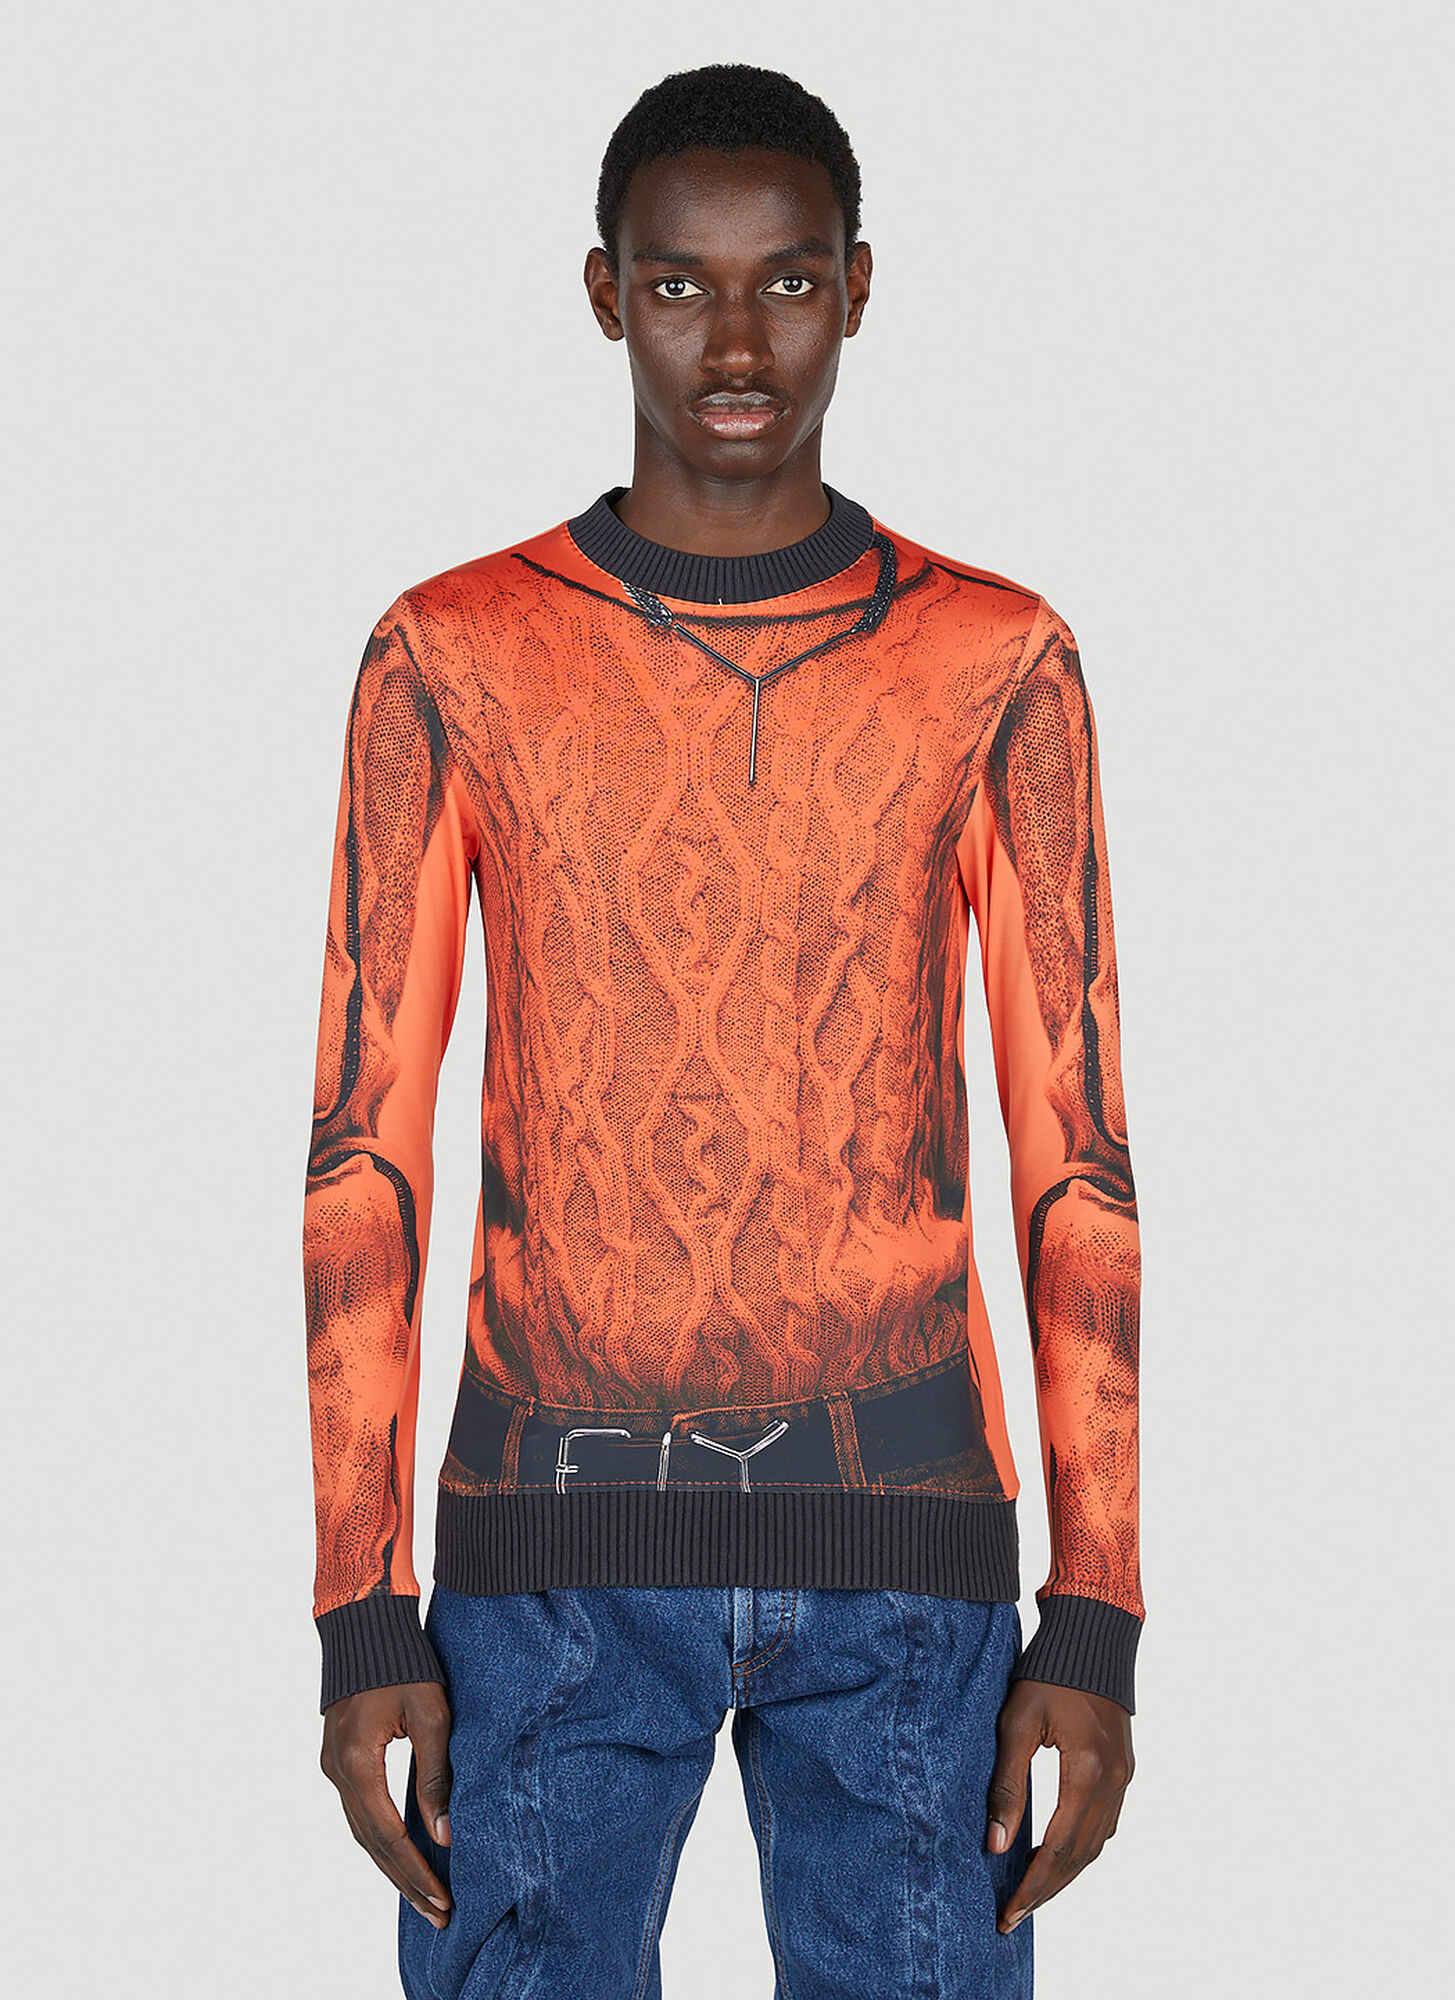 Y/project X Jean Paul Gaultier Trompe L'oeil Top In Orange